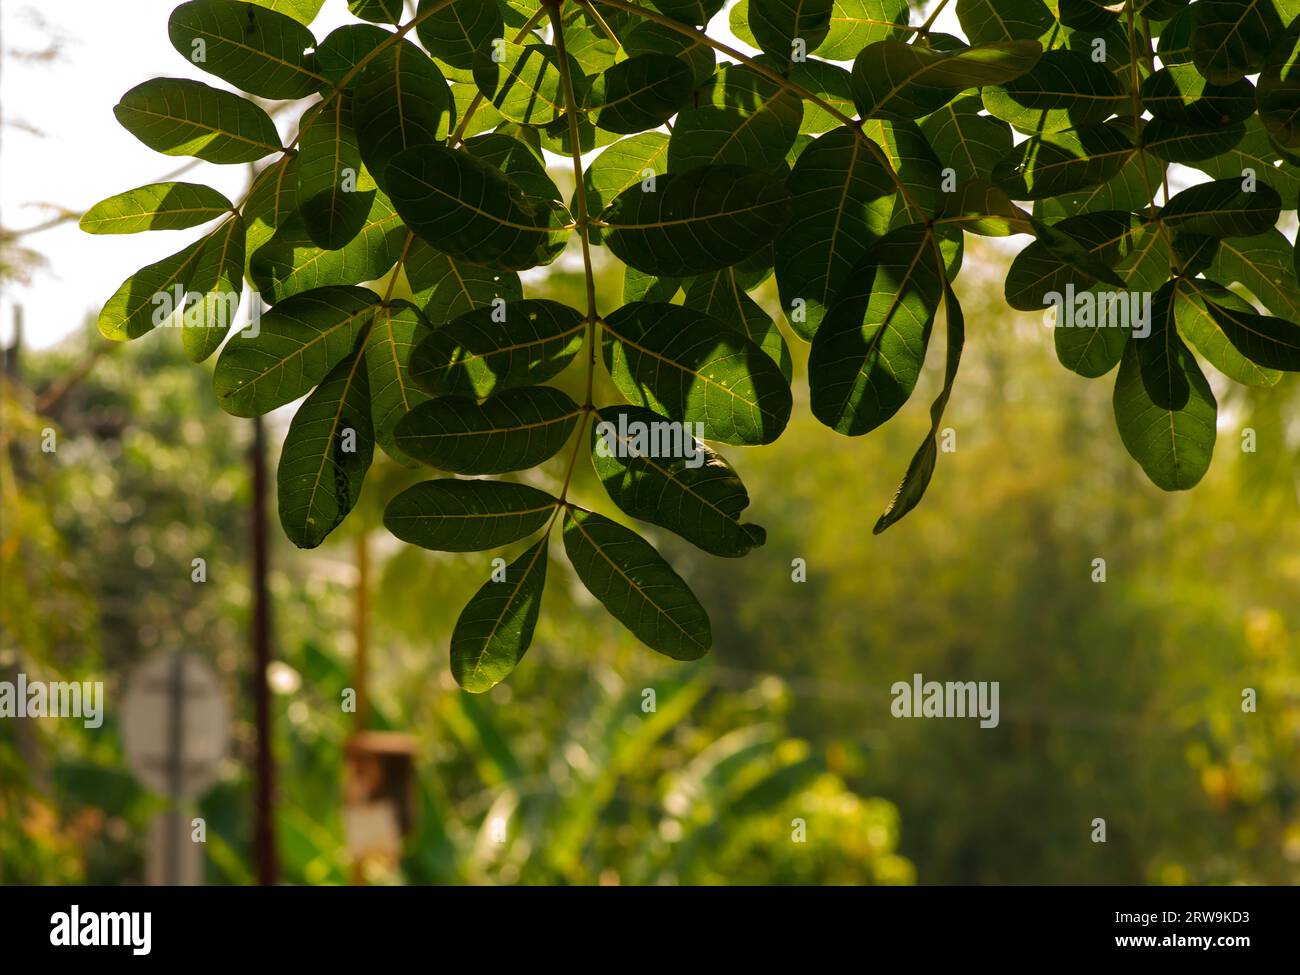 Beringin Iprik, Preh, Ficus retusa, Ficus truncata green leaves, shallow focus Stock Photo